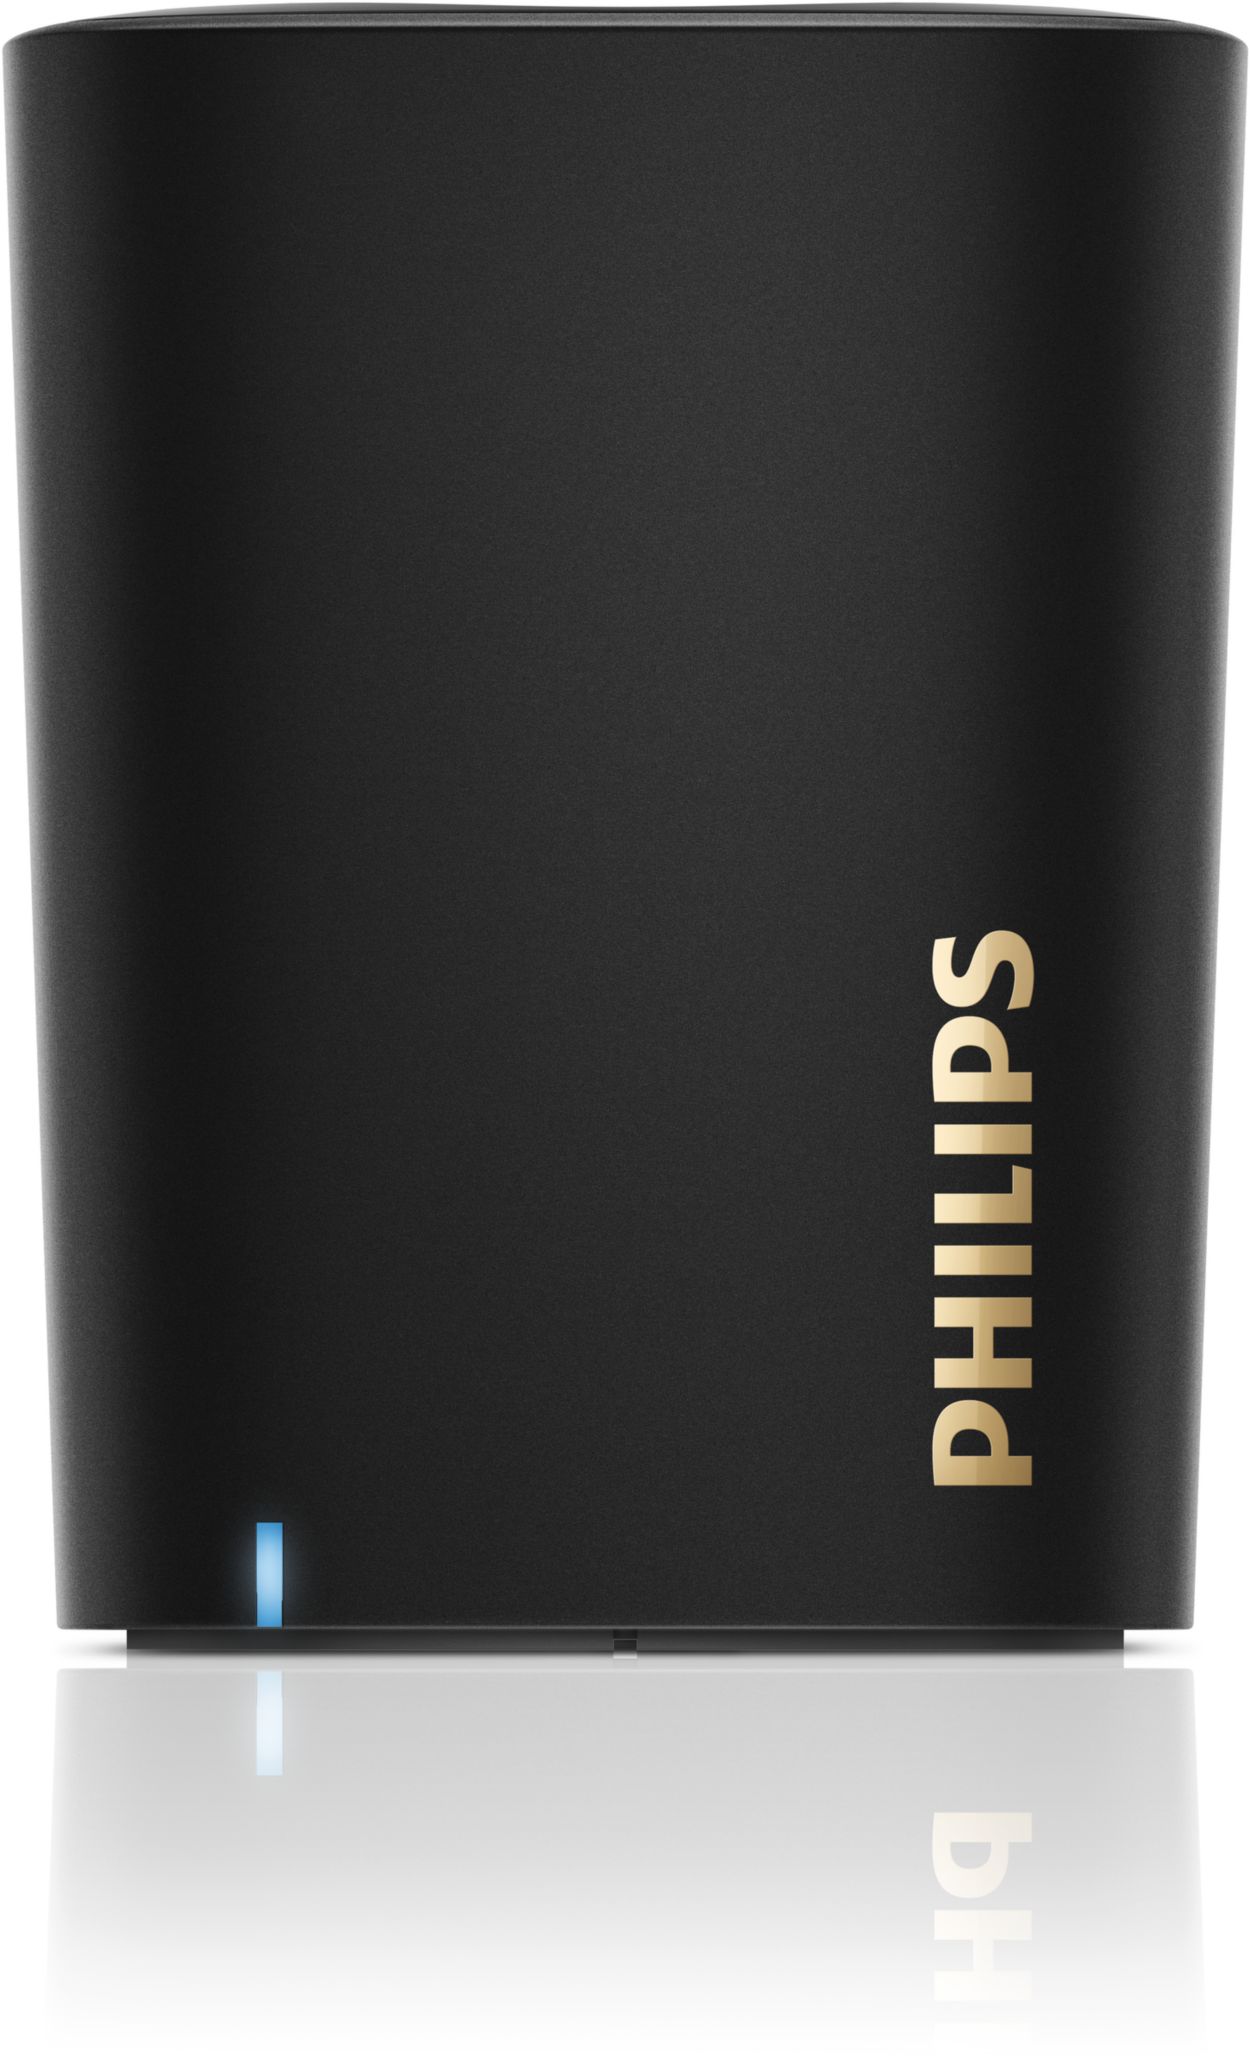 Hormiga Es decir Larva del moscardón wireless portable speaker BT100B/37 | Philips